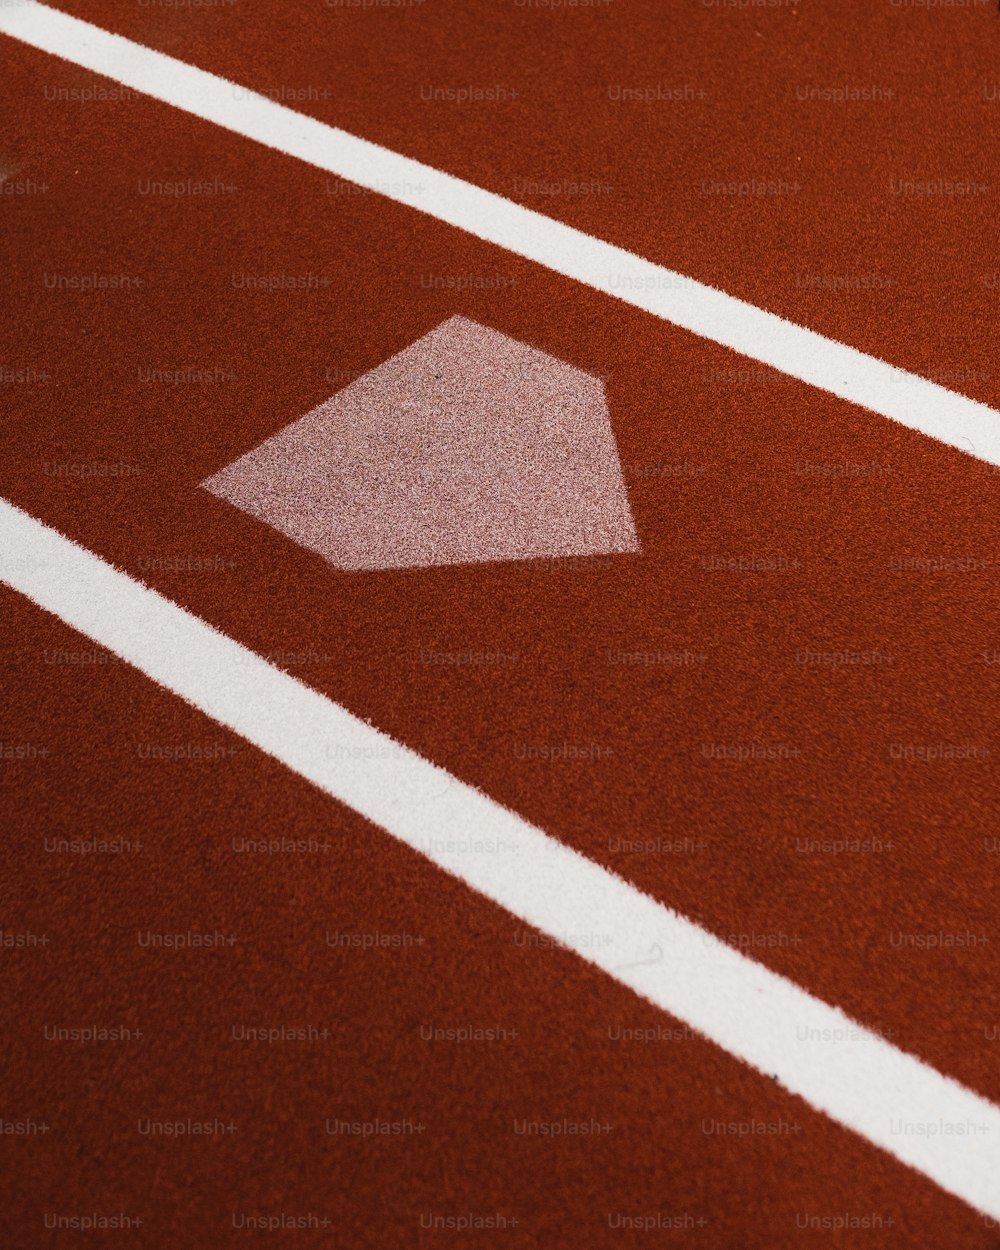 a close up of a baseball diamond on a baseball field